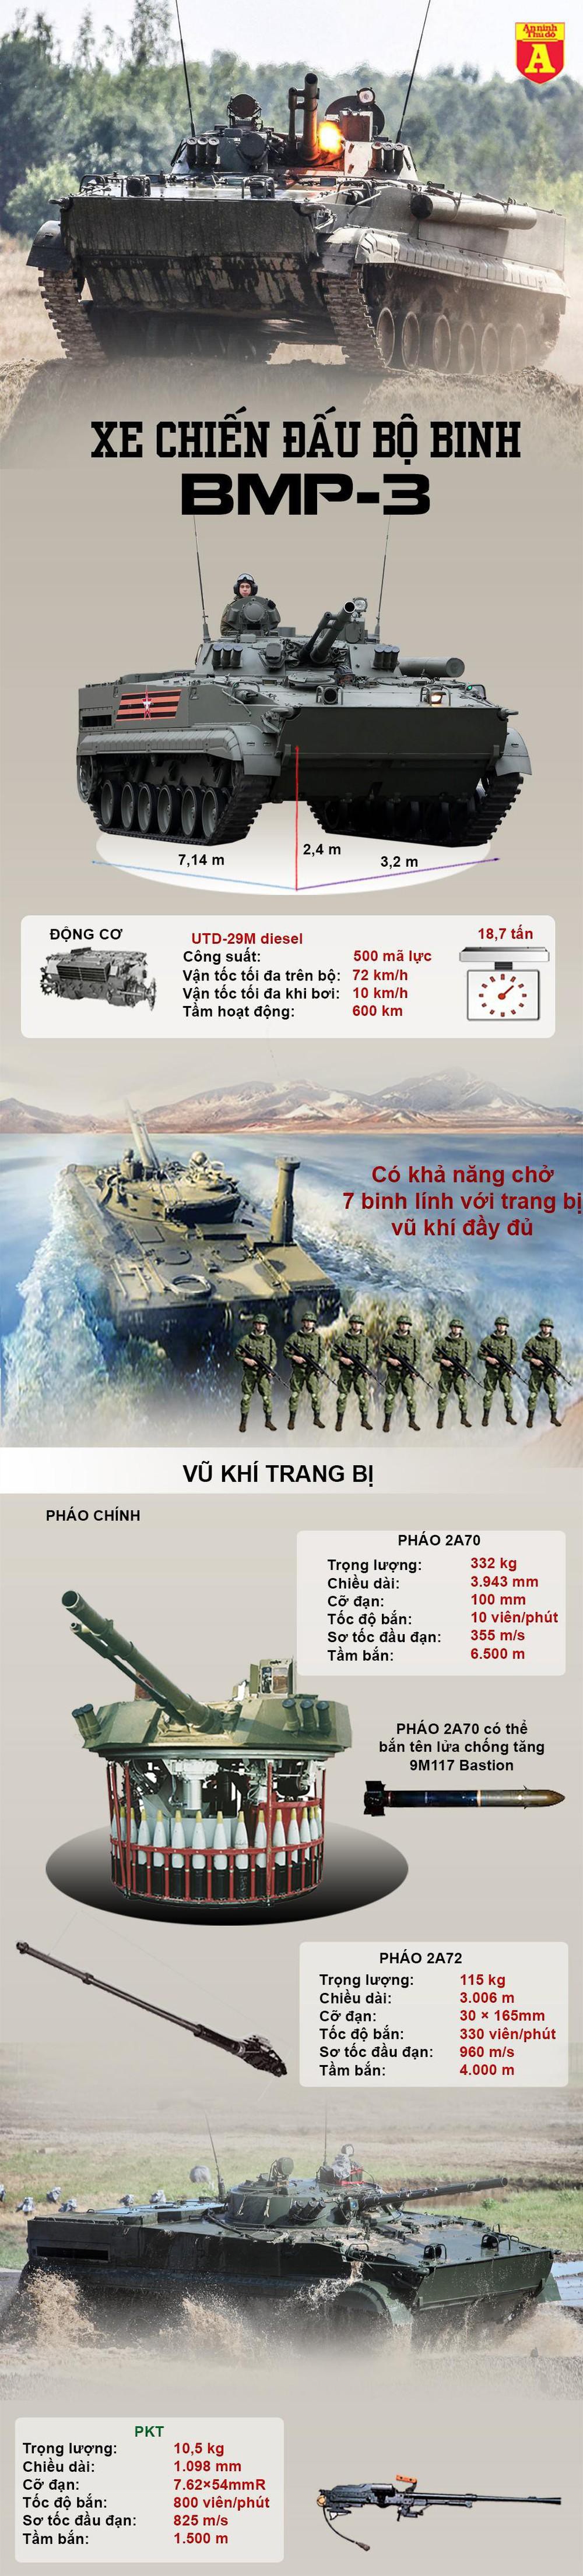 [Infographics] Khám phá "Nữ hoàng bộ binh" BMP-3  - Ảnh 1